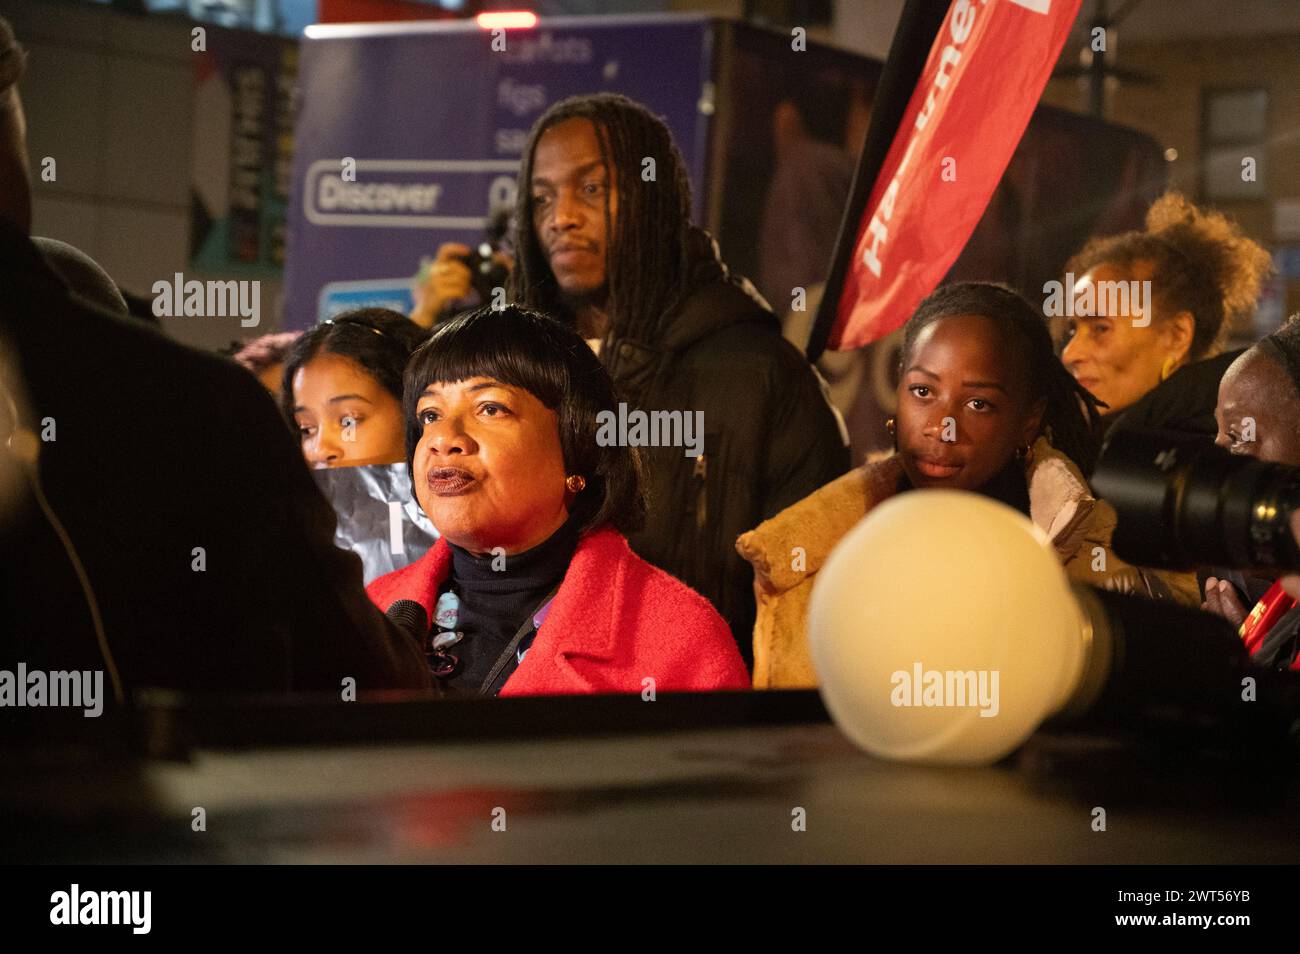 Am 15. März, Tage nach dem Konservat, nahm eine große Gruppe von Anhängern des Abgeordneten Diane Abbott für Hackney North an einer Kundgebung vor dem Rathaus von Hackney Teil Stockfoto